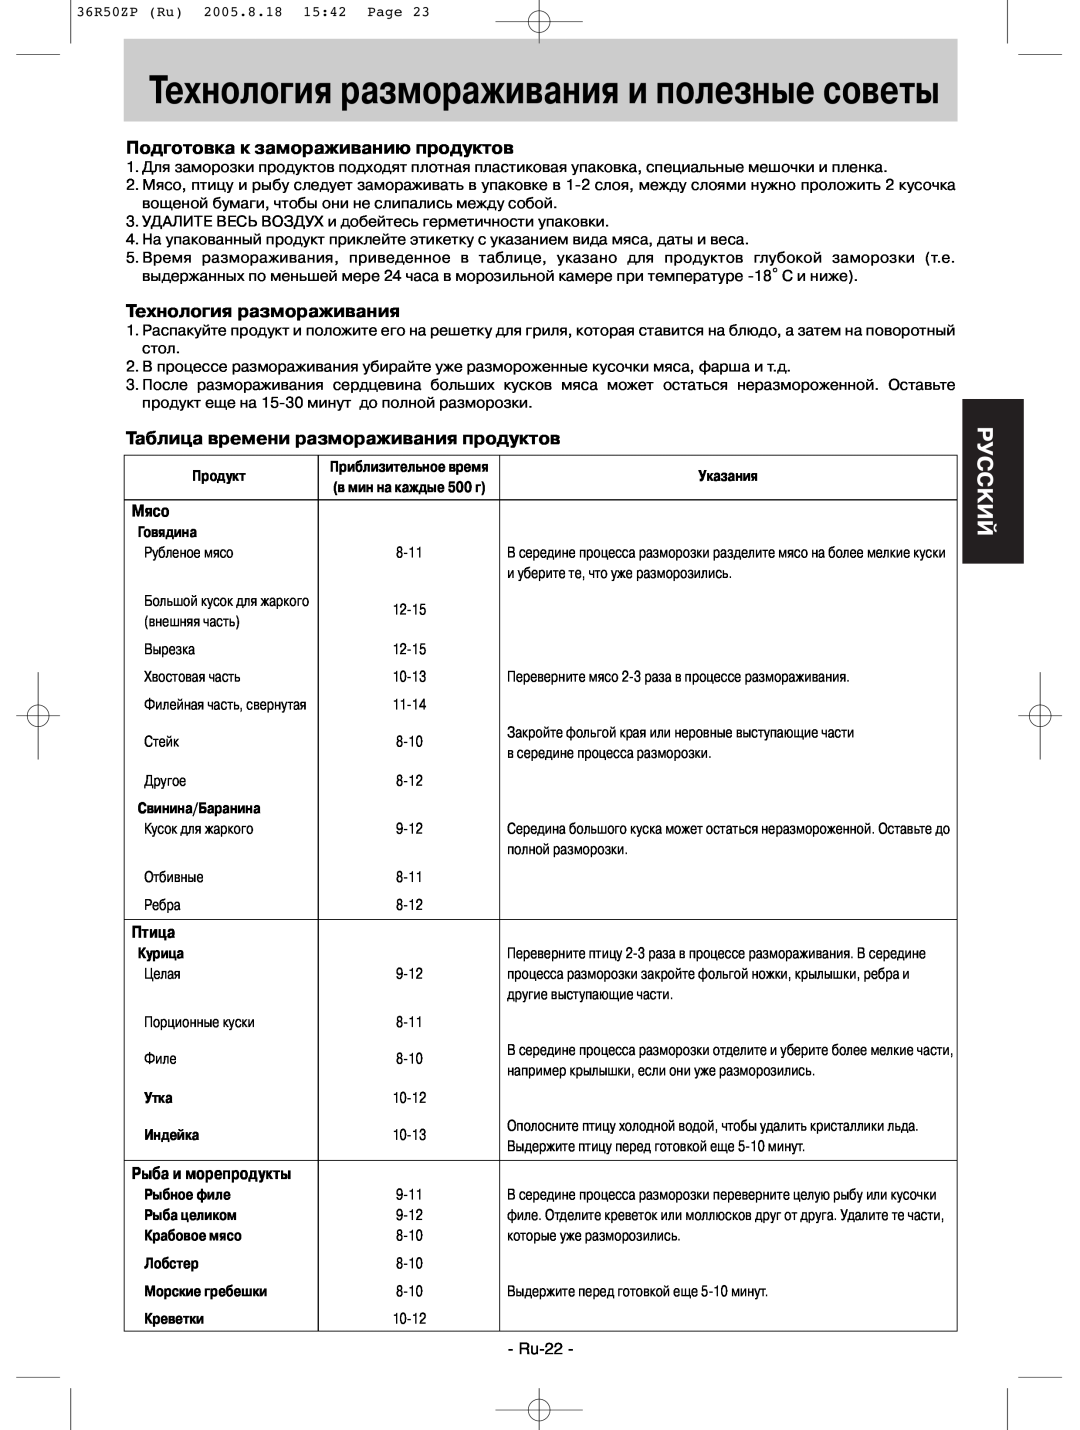 Panasonic NN-G315WF manual Технология размораживания и полезные советы, Pуcckий, Подготовка к замораживанию продуктов, Мясо 